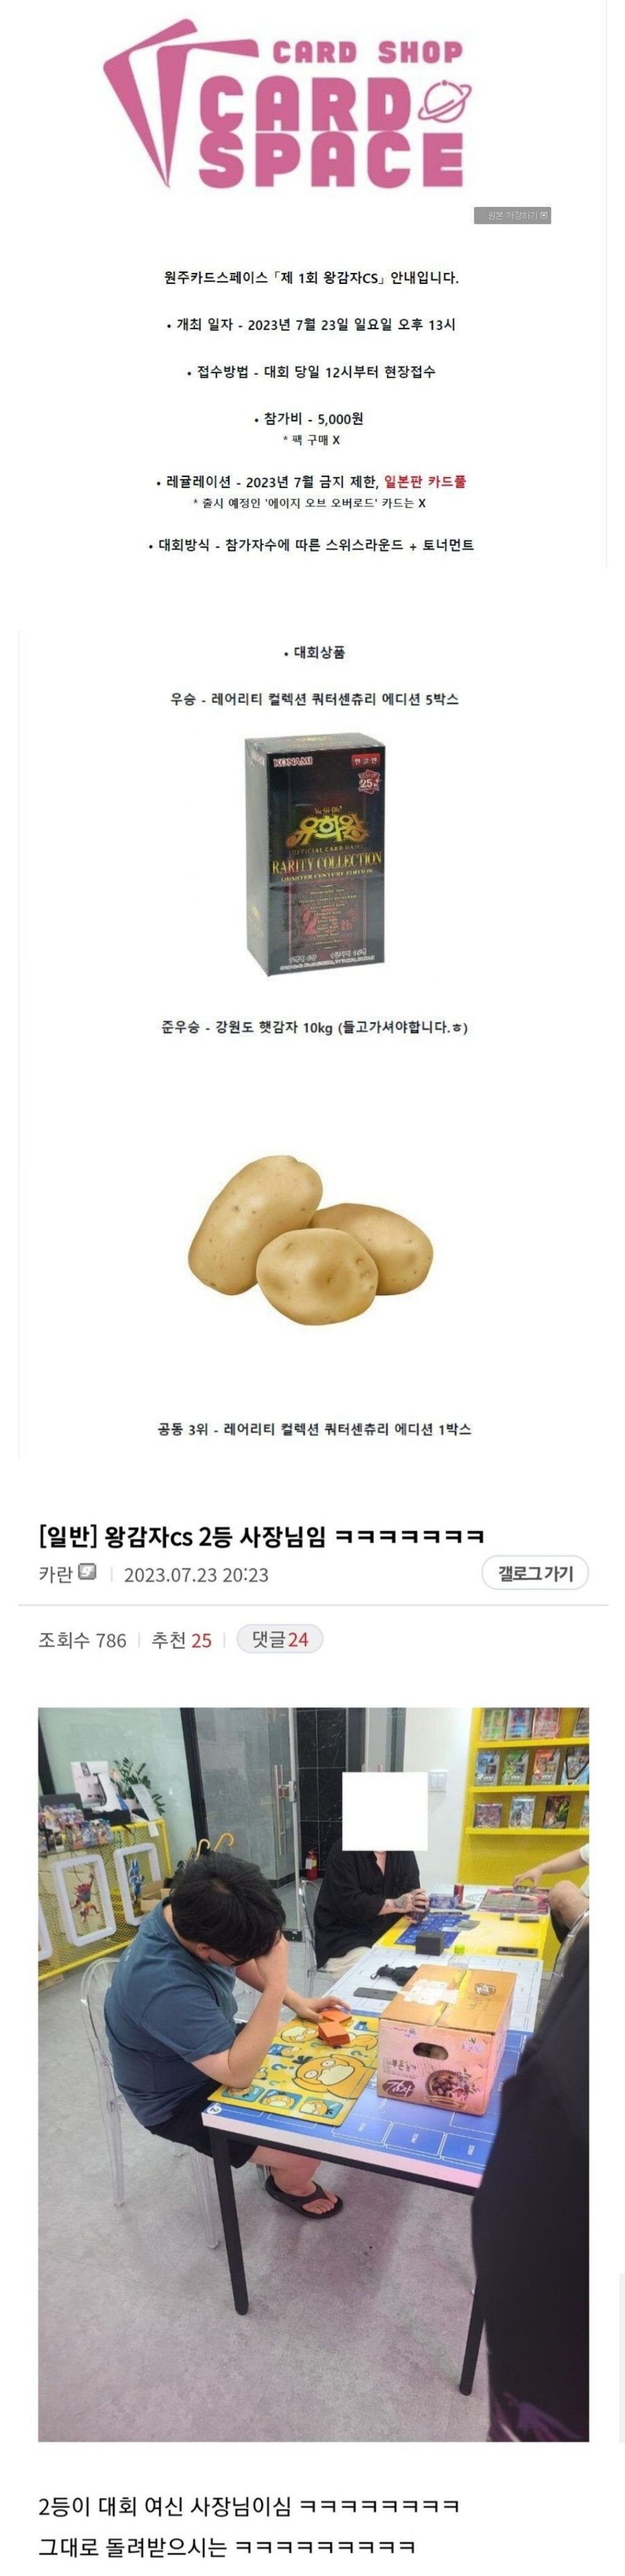 6 대회 상품이 감자 10kg인 유희왕 대회.jpg